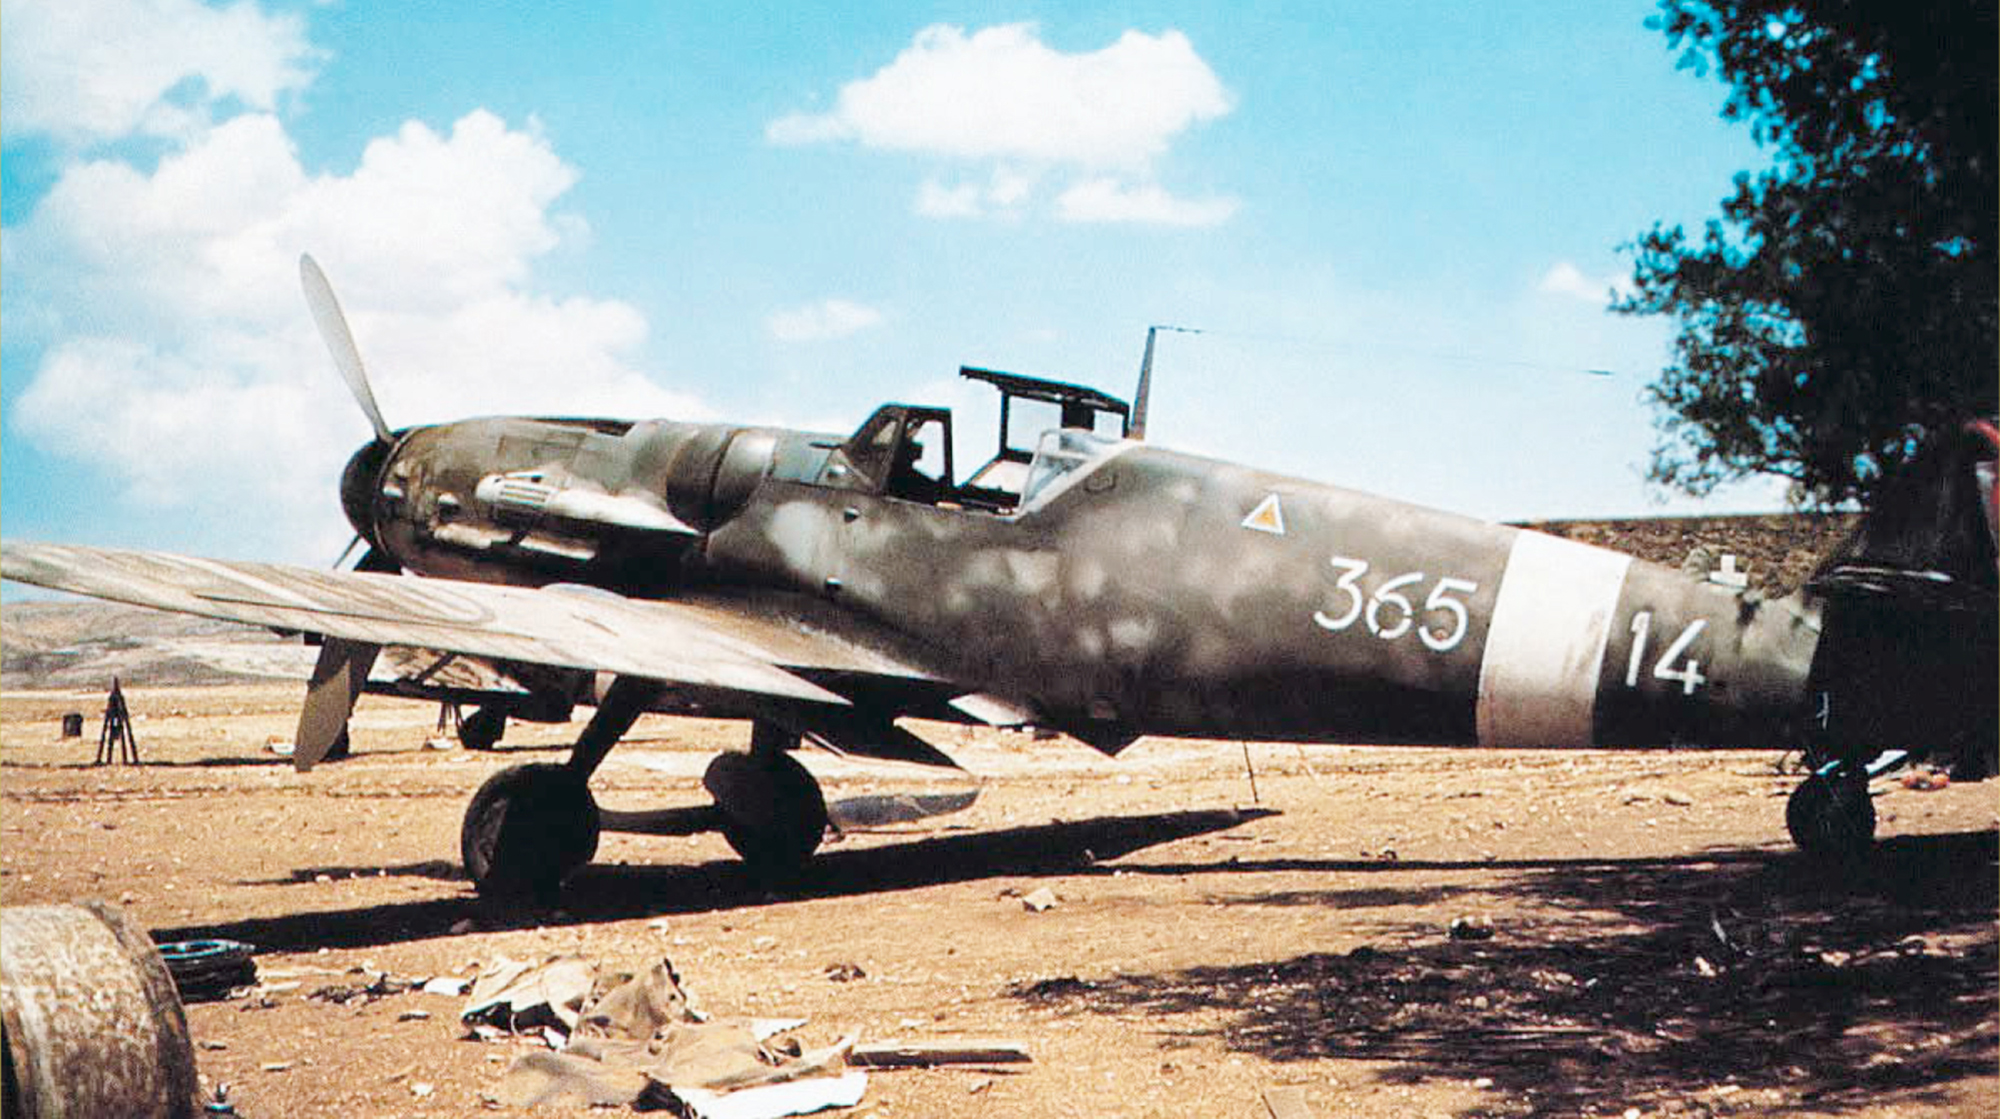 Messerschmitt-Bf-109G6Trop-RA-150G365SA-365-14-Sicily-Italy-1943-02.jpg